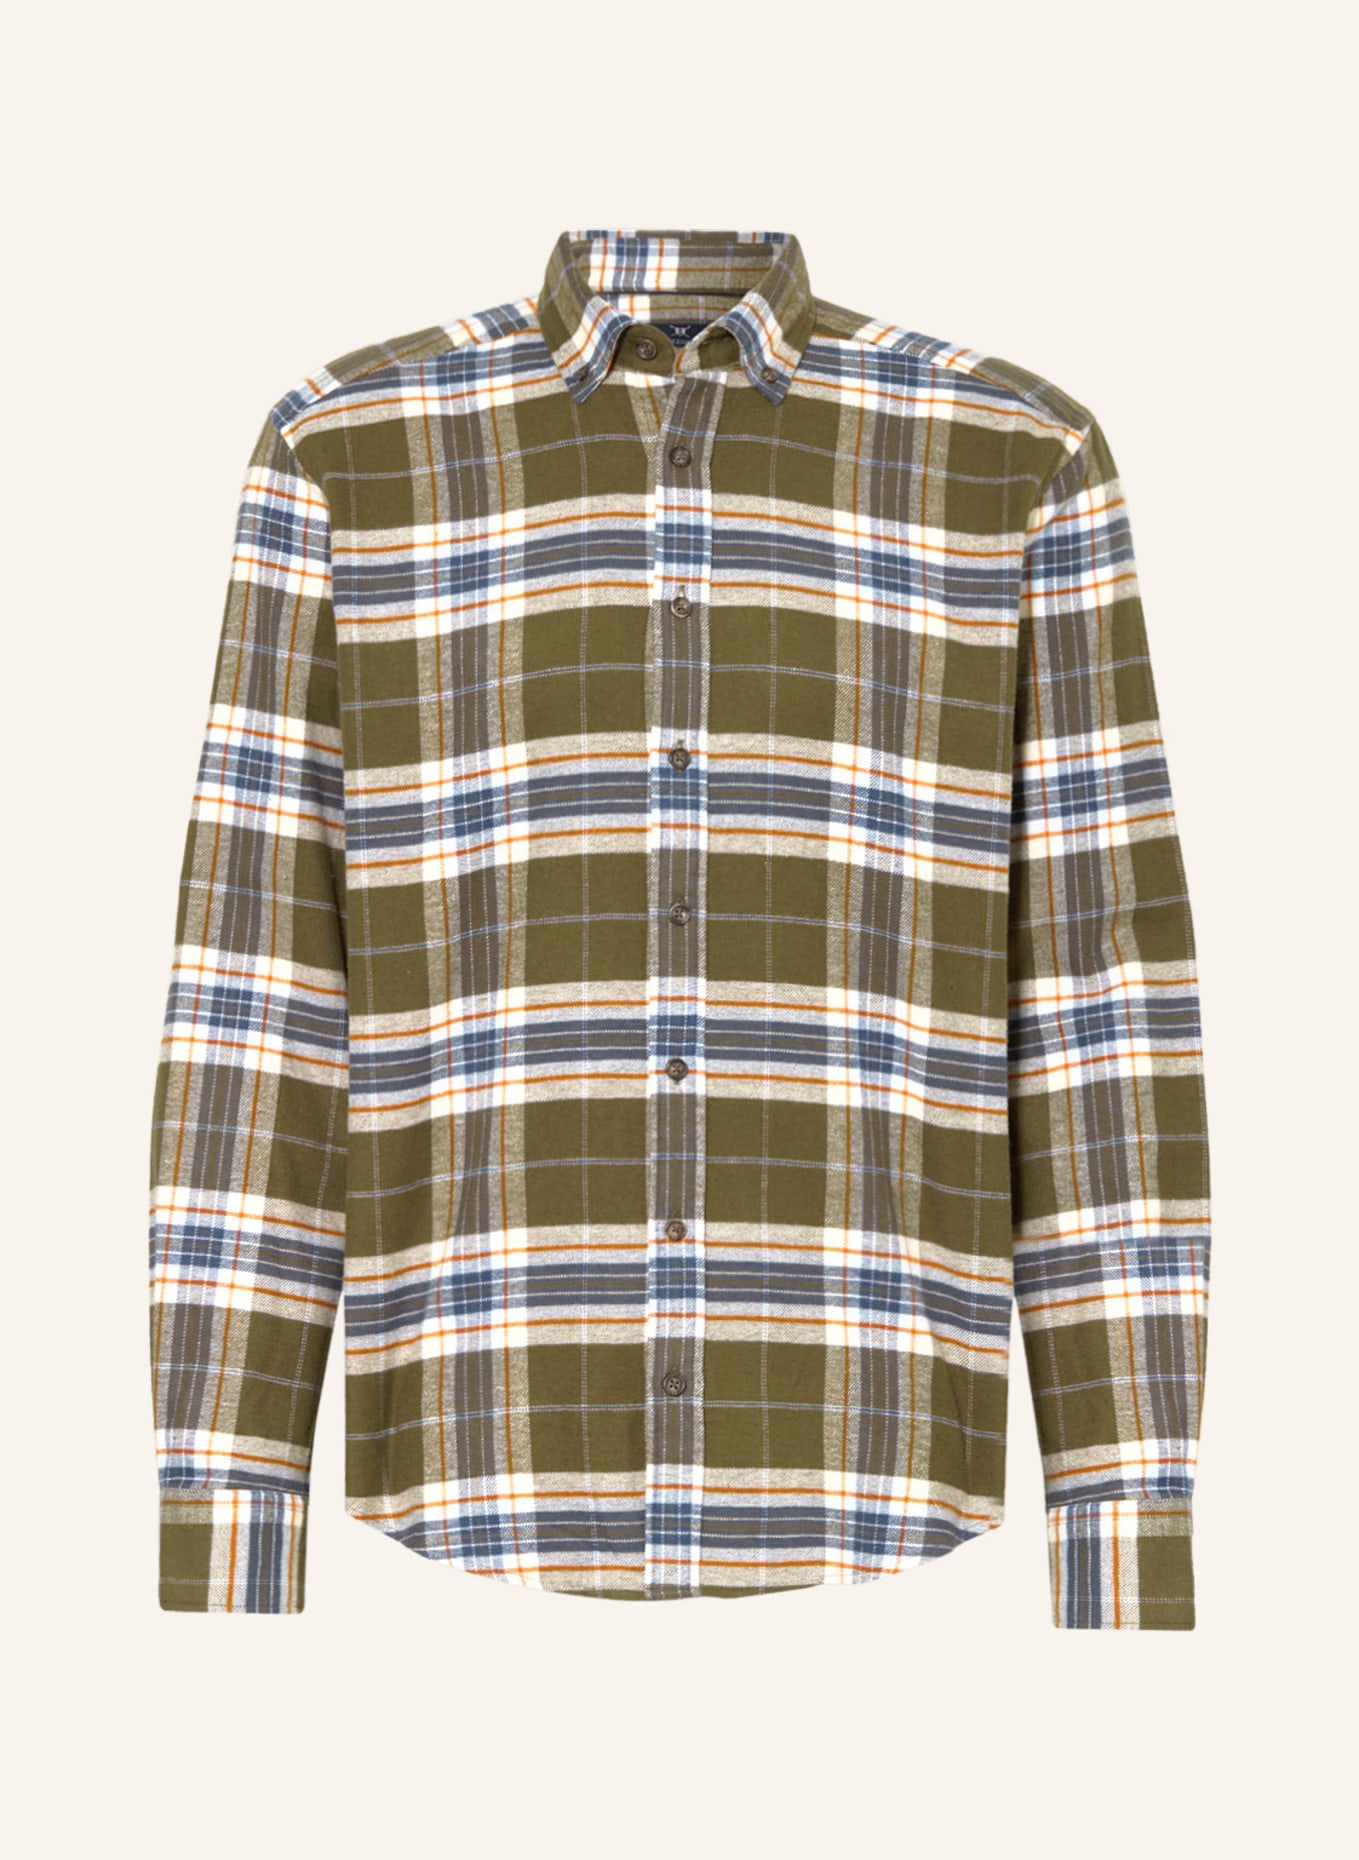 STROKESMAN'S Flannel shirt regular fit, Color: OLIVE/ BLUE GRAY/ ORANGE (Image 1)